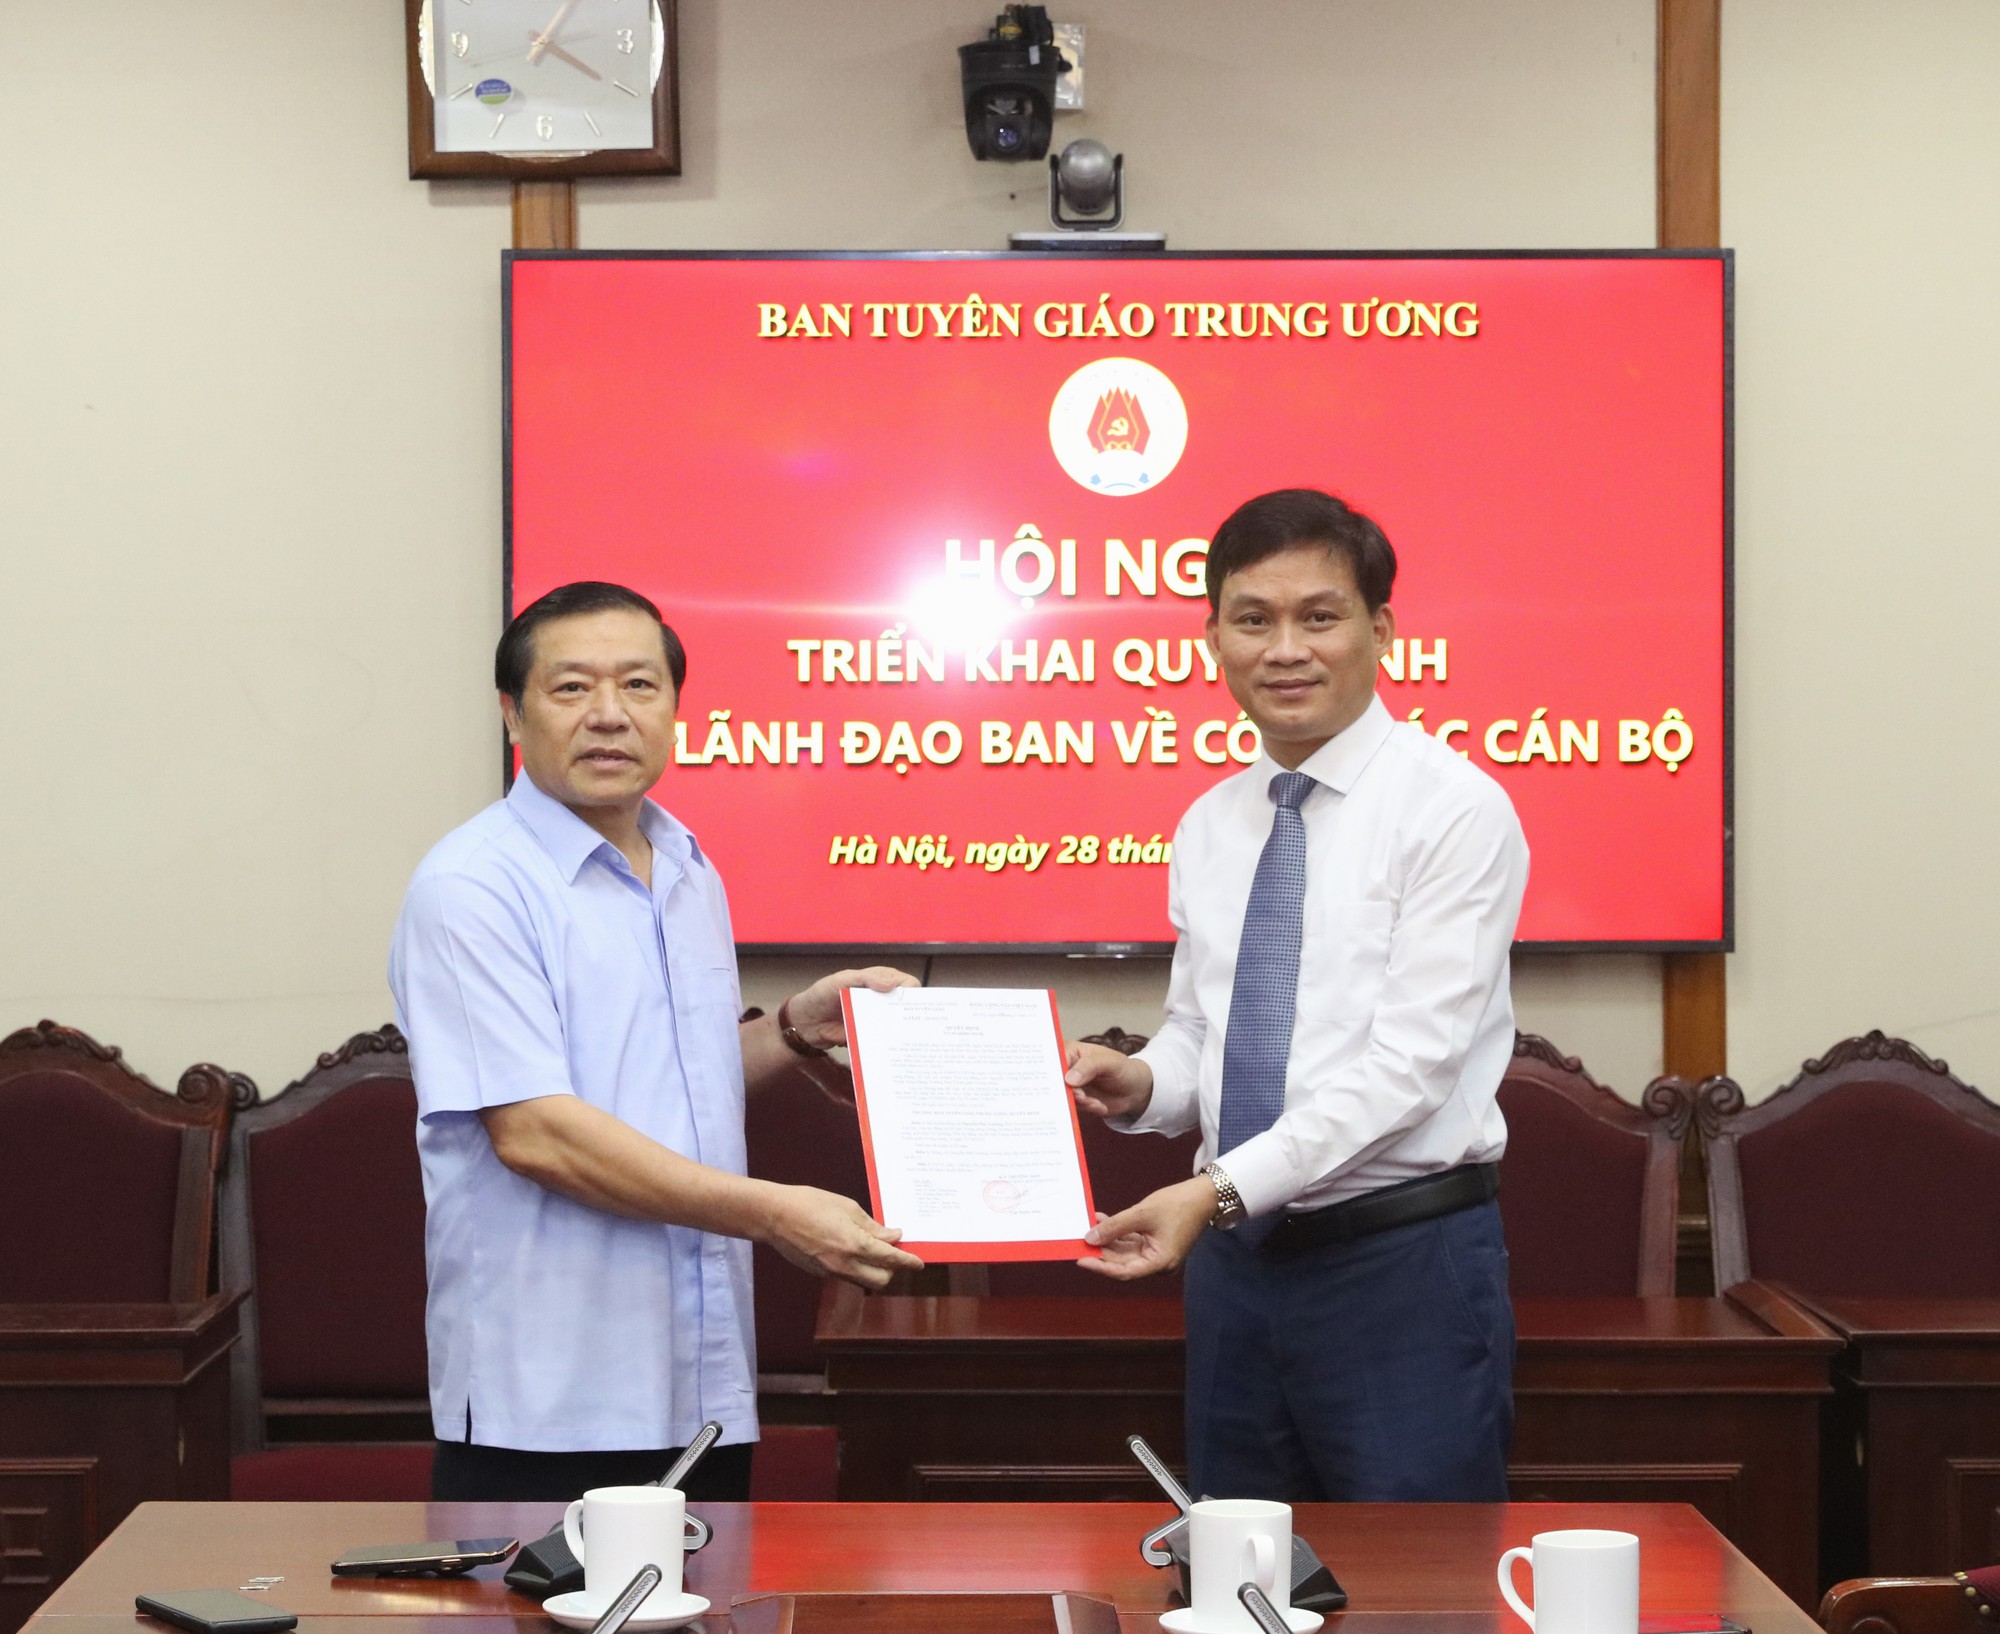 Bổ nhiệm ông Nguyễn Phú Trường làm Vụ trưởng của Ban Tuyên giáo Trung ương - Ảnh 1.